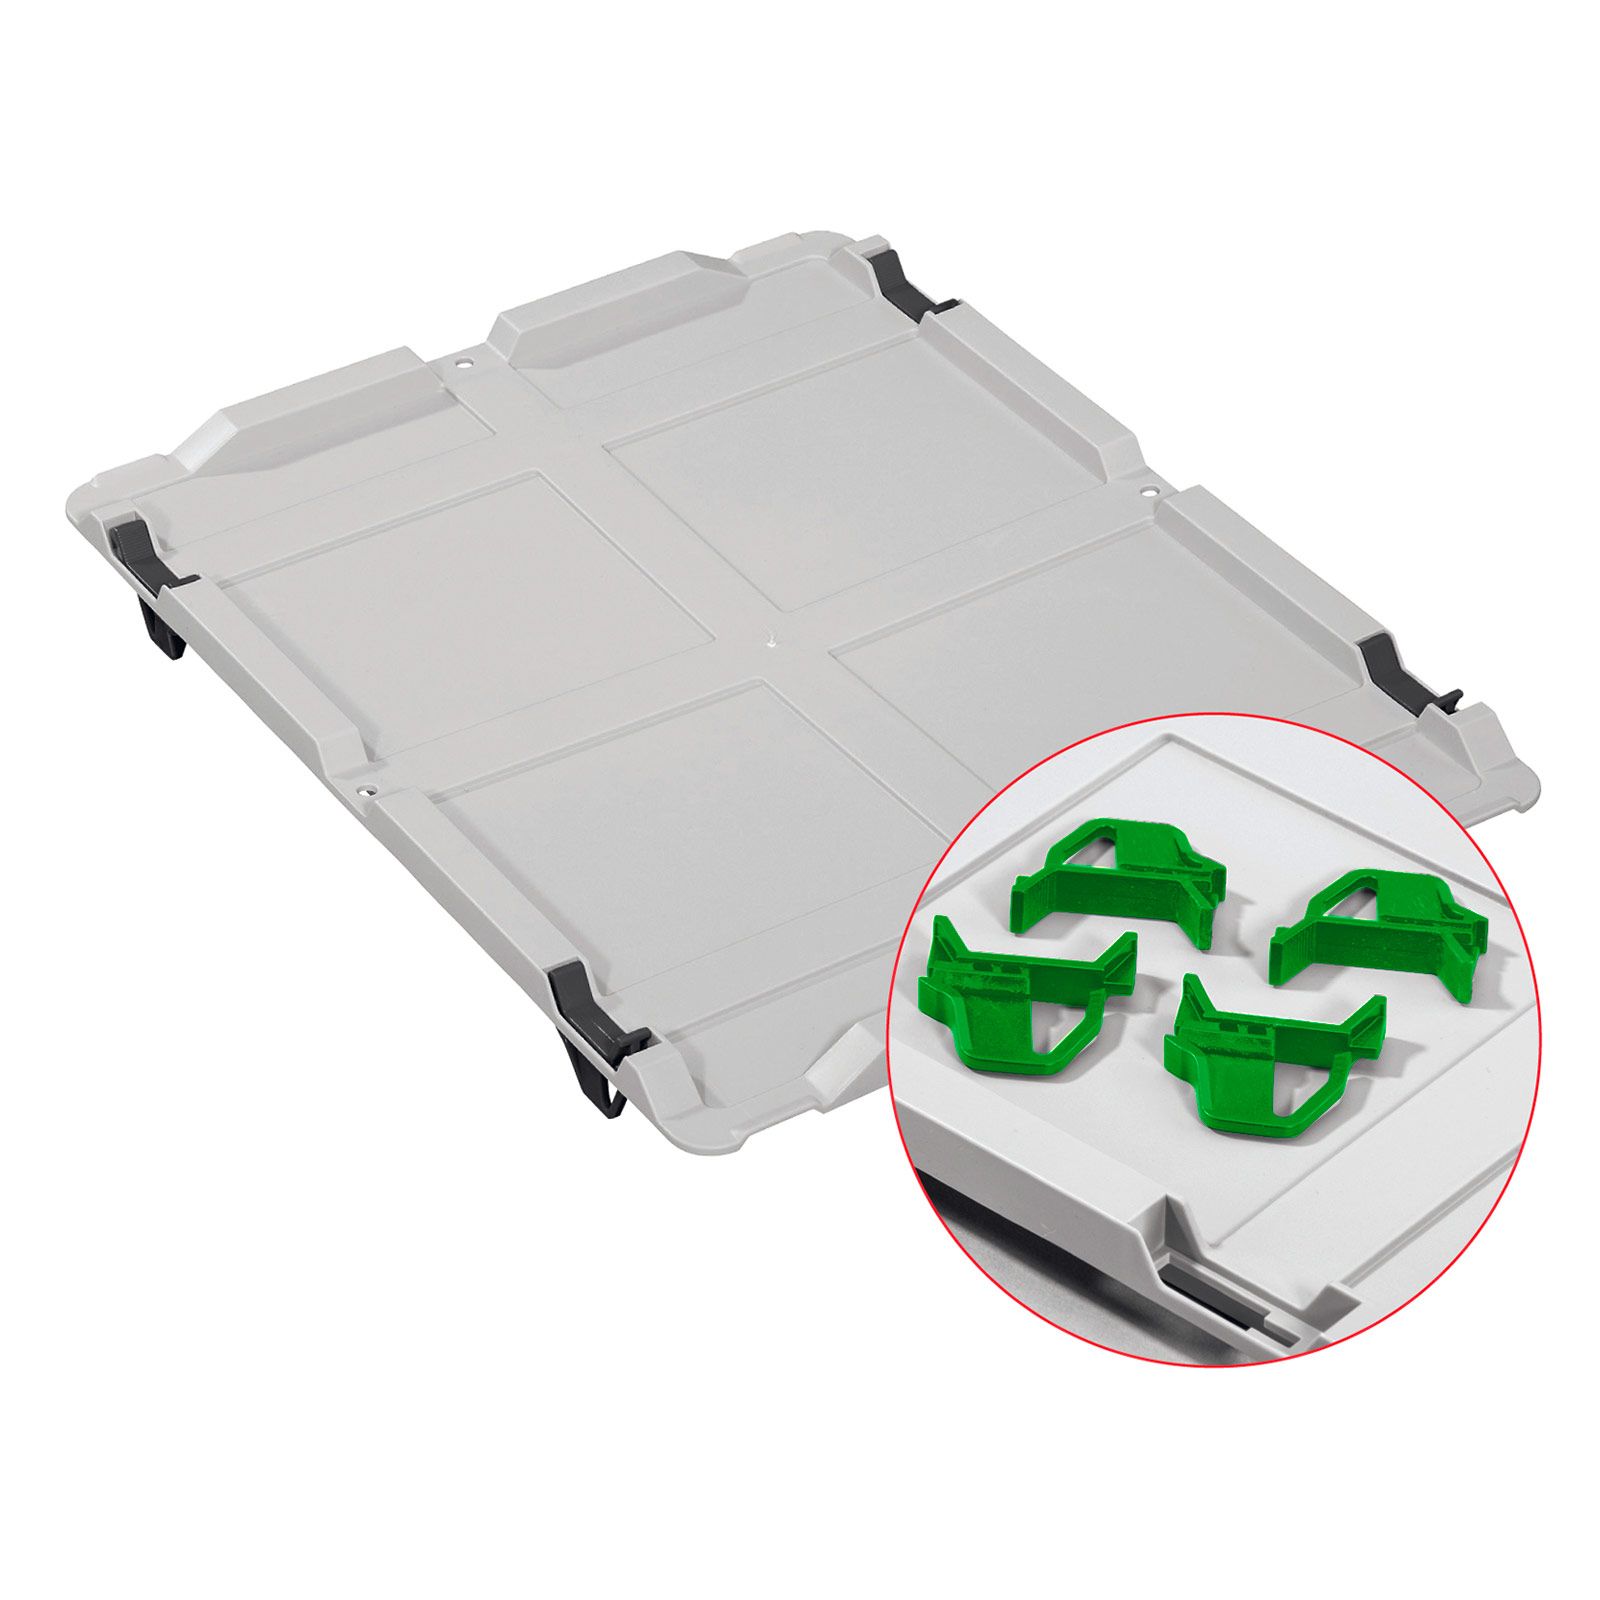 Auflagedeckel Set Eurobox NextGen mit 4 grünen Schiebeschnappverschlüssen | BxT 40x60cm | Eurobehälter, Transportbox, Transportbehälter, Stapelbehälter